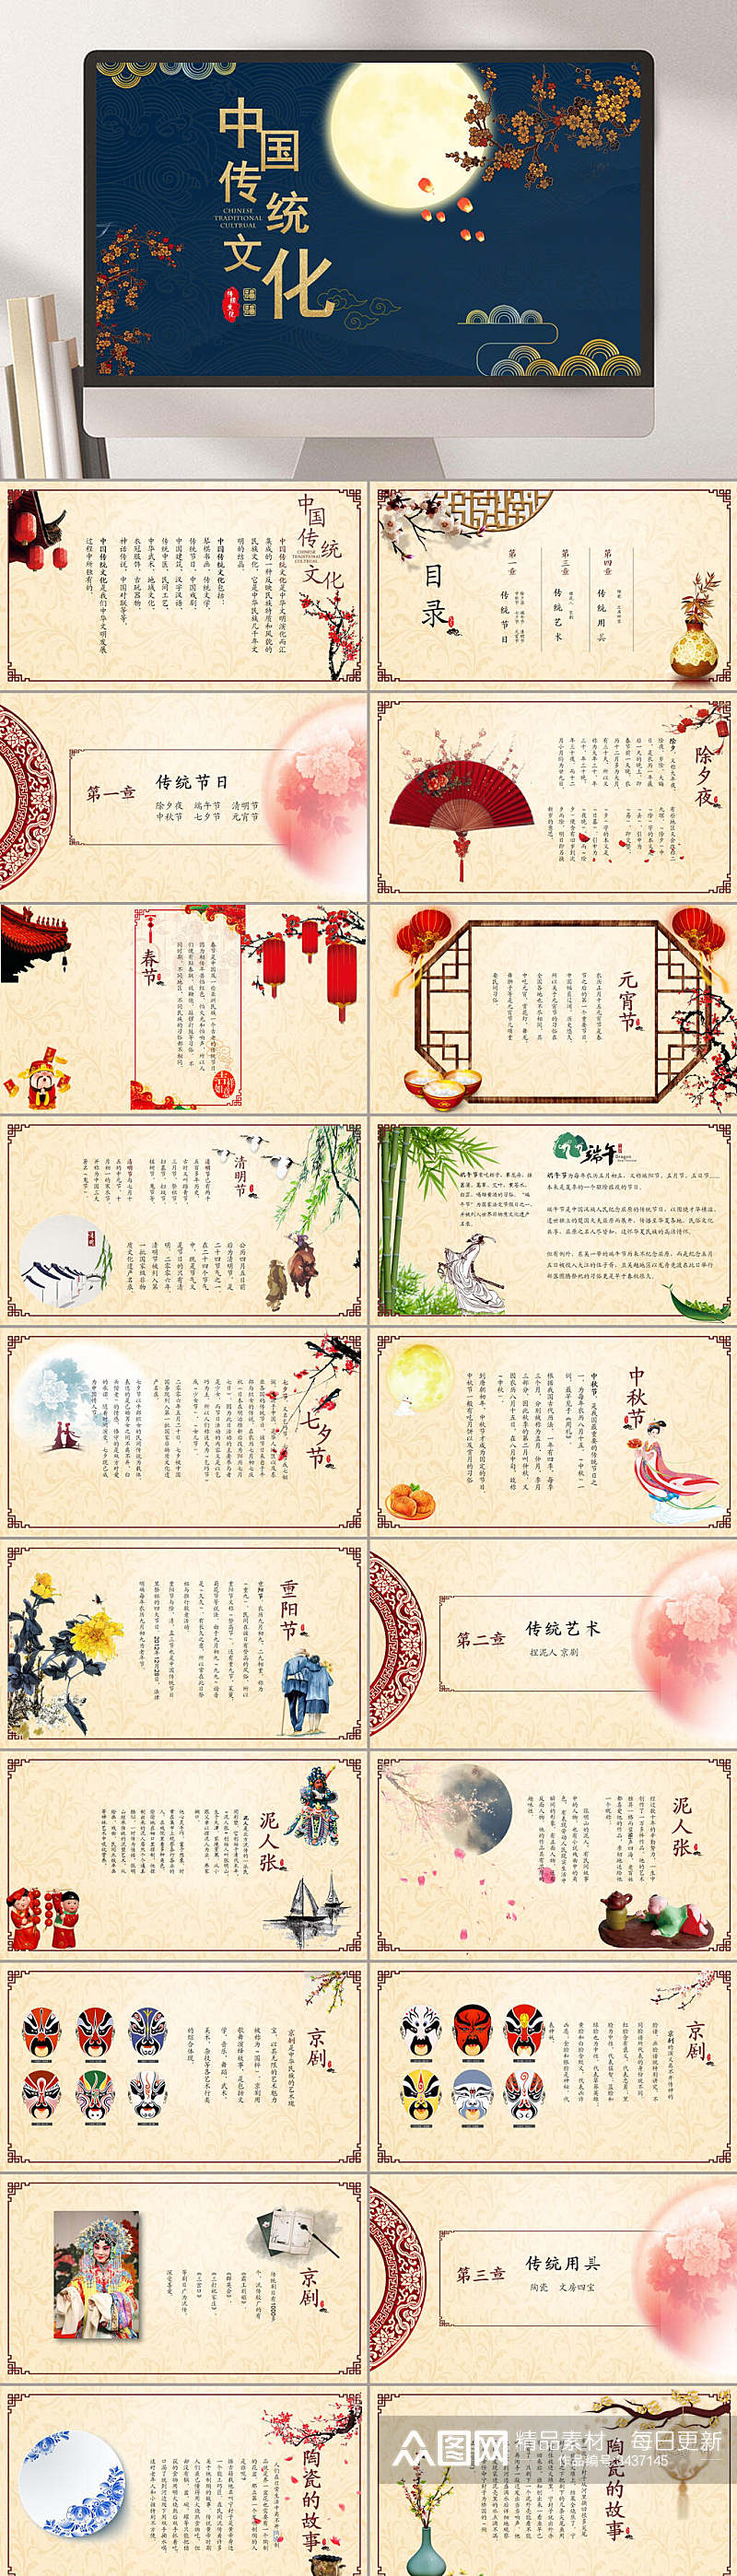 中国传统文化月圆典雅中华文化PPT素材